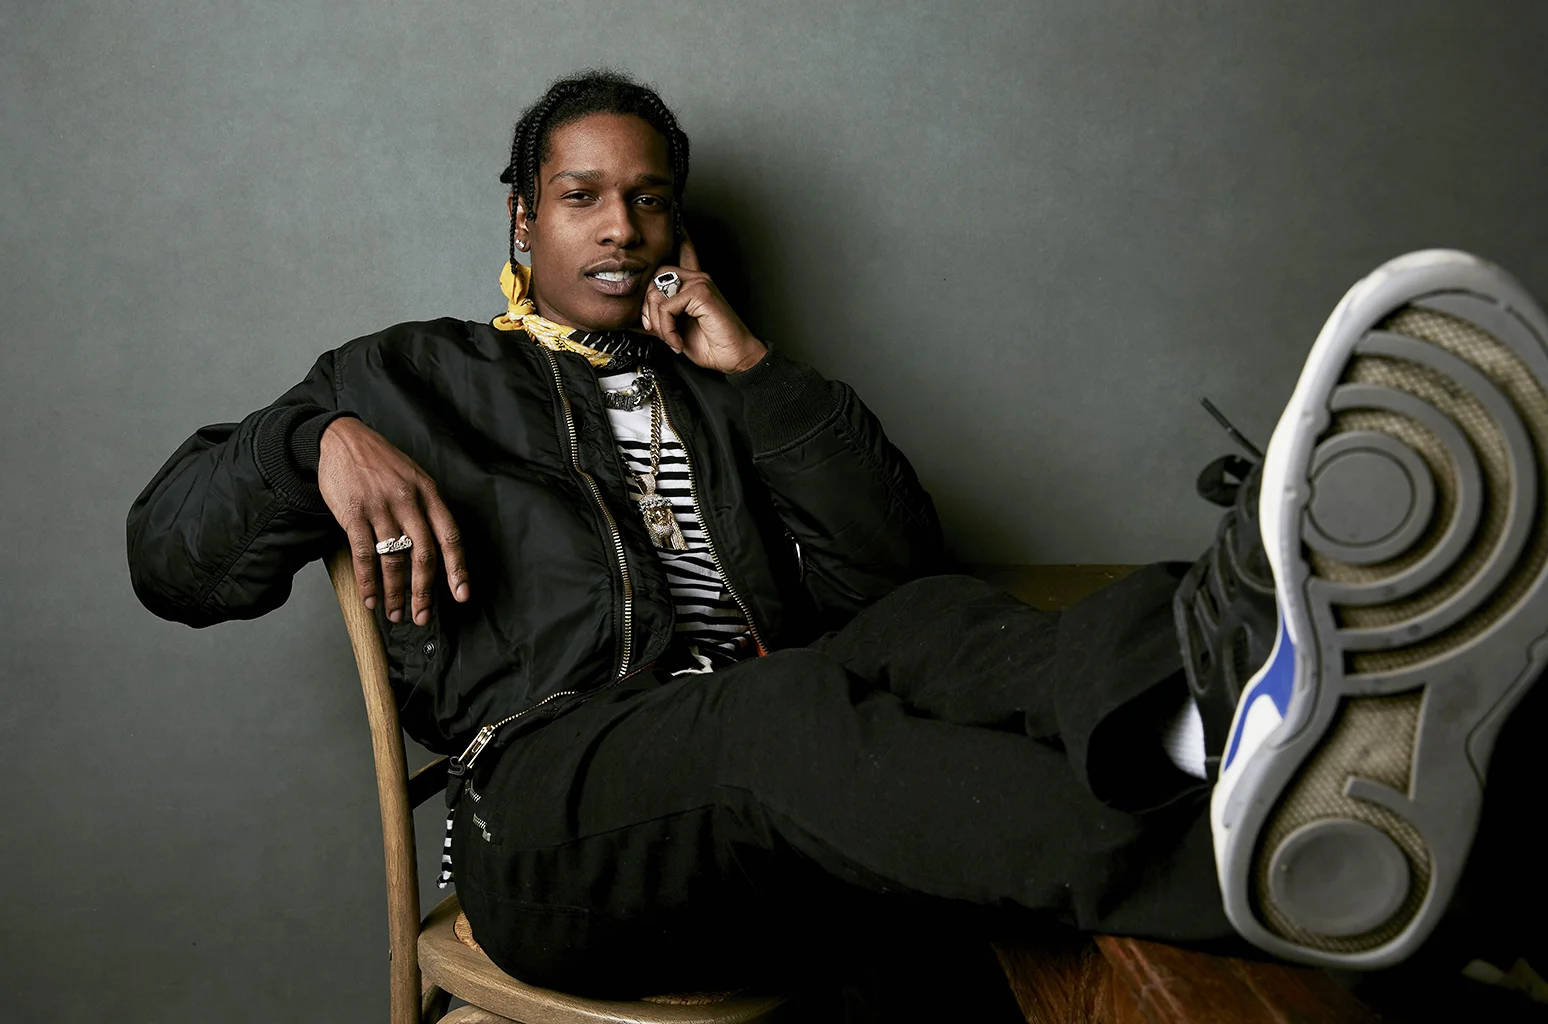 Из-за A$AP Rocky в 2011-м гарлемский хип-хоп окрасился в пурпурный, отражаясь в золотистых гриллзах молодых модников. В TESTING рэпер поднял Нью-Йорк на новую высоту, которую конкурентам будет тяжело достичь.